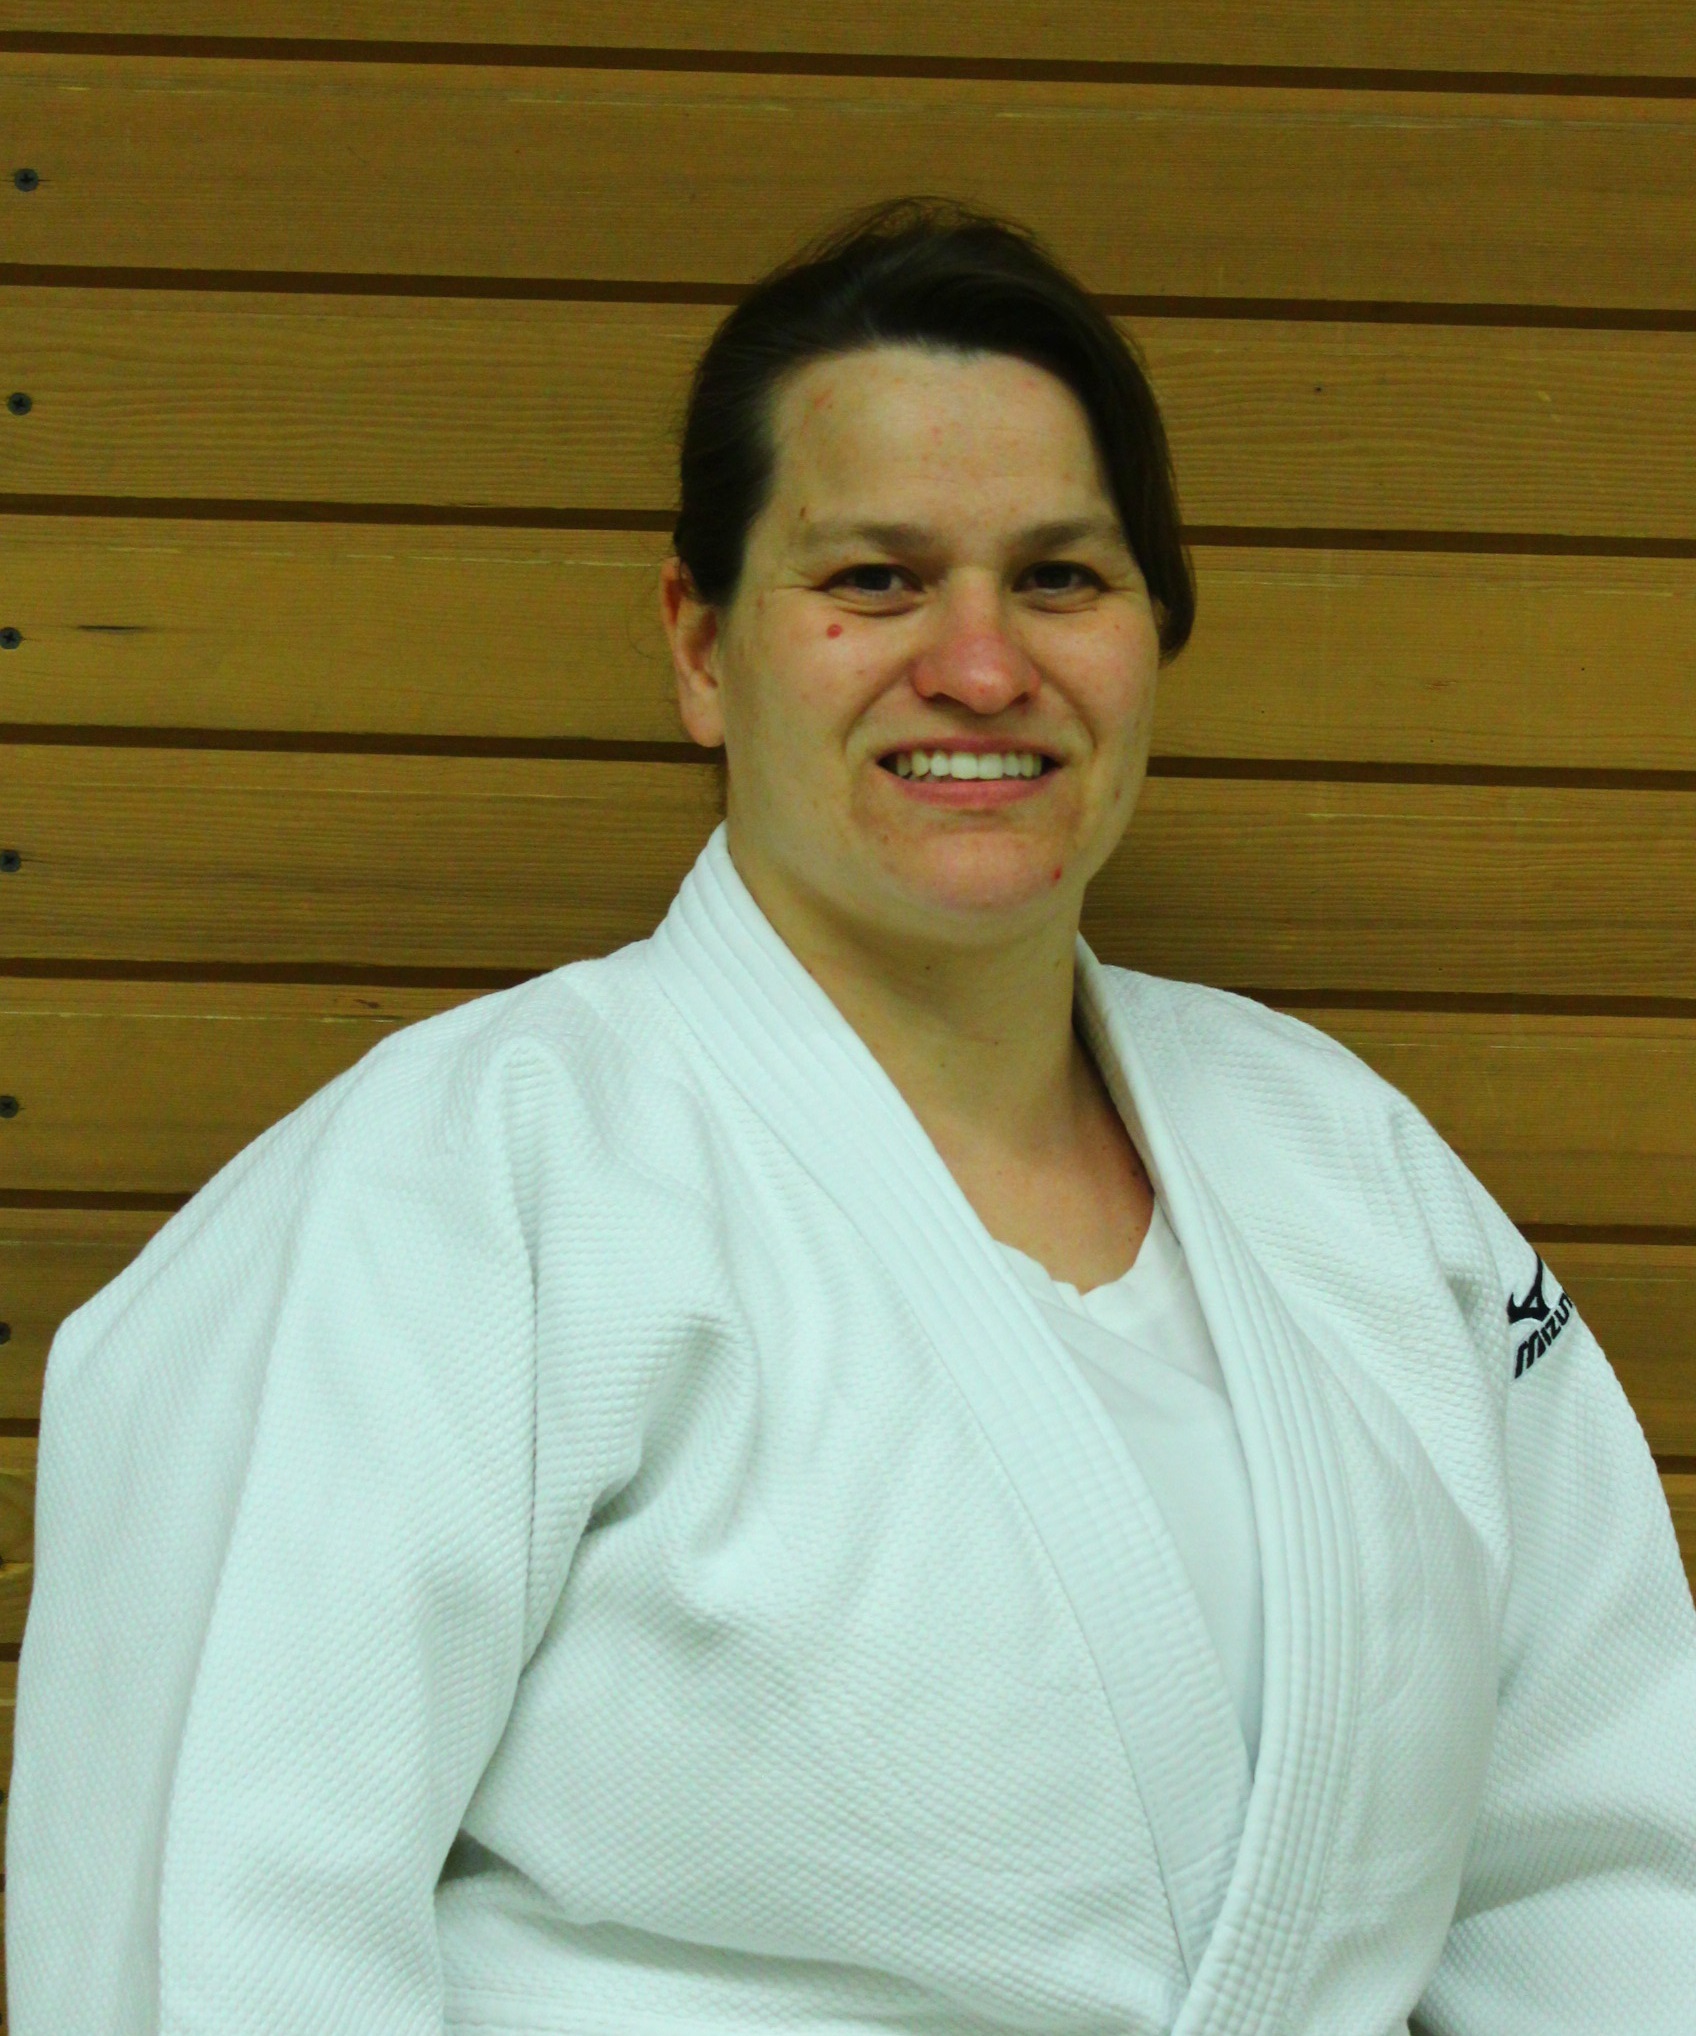 Porträ von Isabell Boxnick, im Judo Anzug vor einer Holzwand.